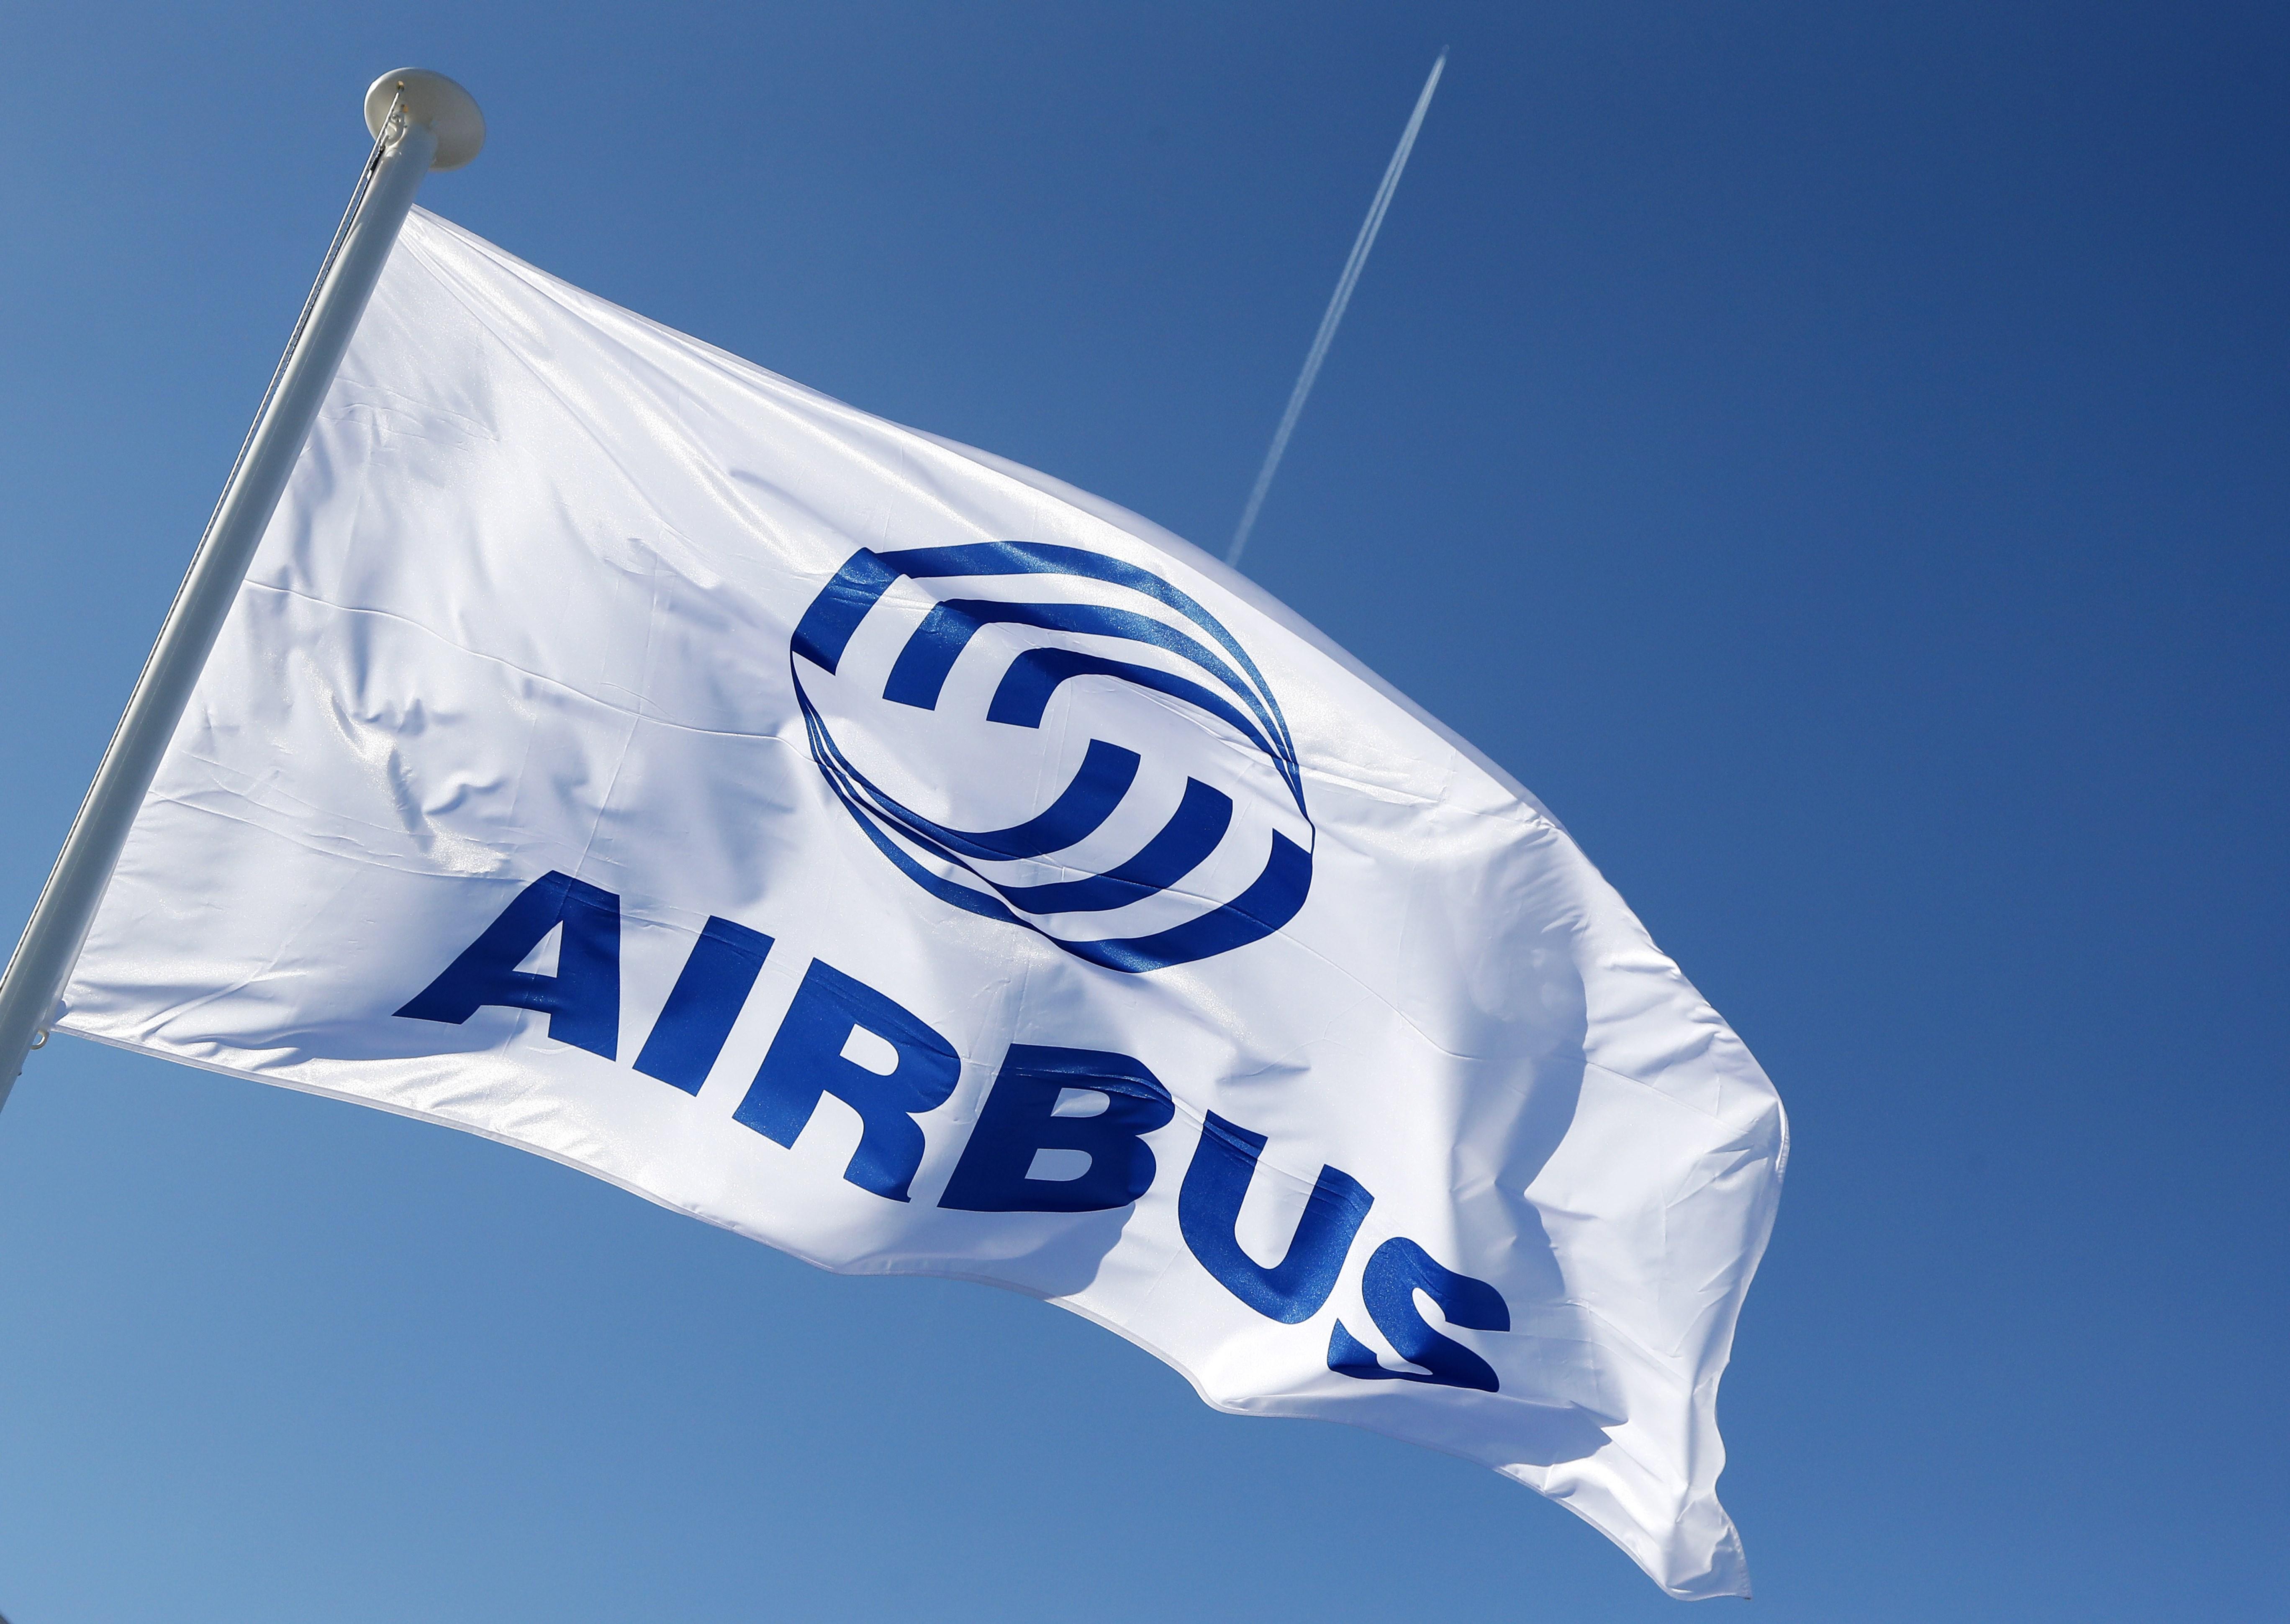 Airbus despedirá a 630 trabajadores en España